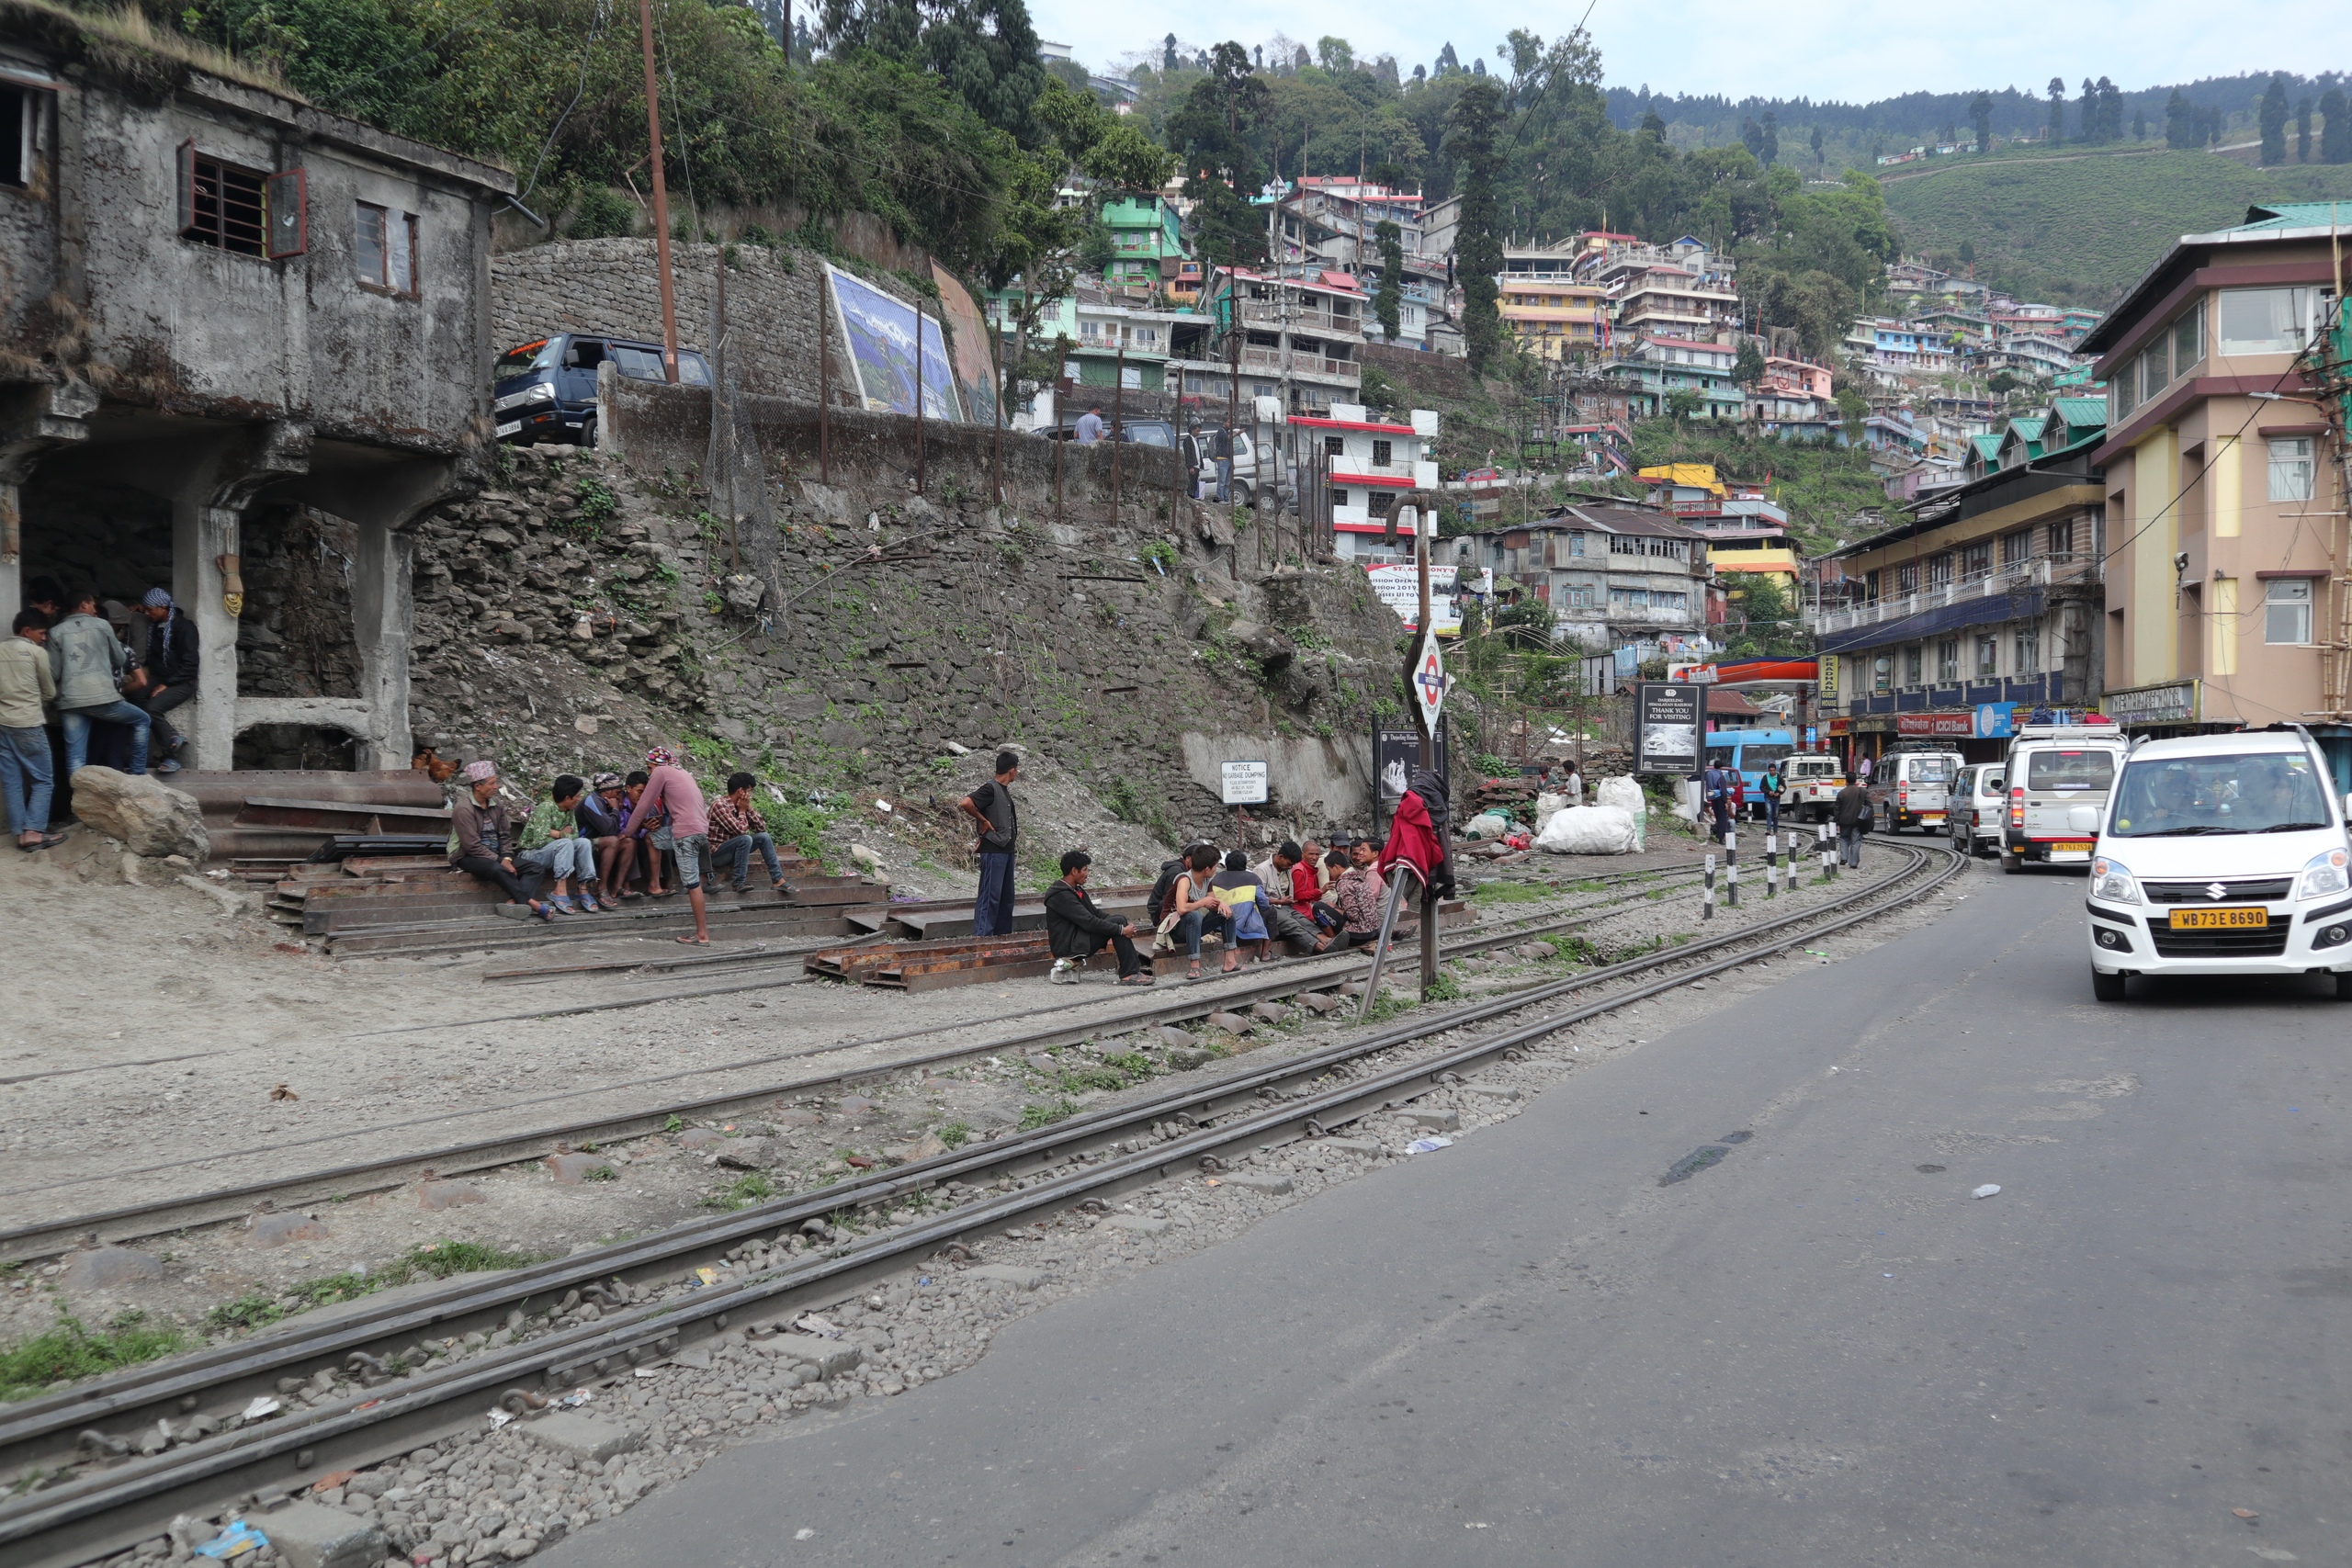 Узкоколейный поезд в Дарджилинг. Первая встреча с Гималаями. Железные дороги,Индия,Узкоколейки,Дарджилинг,Горы